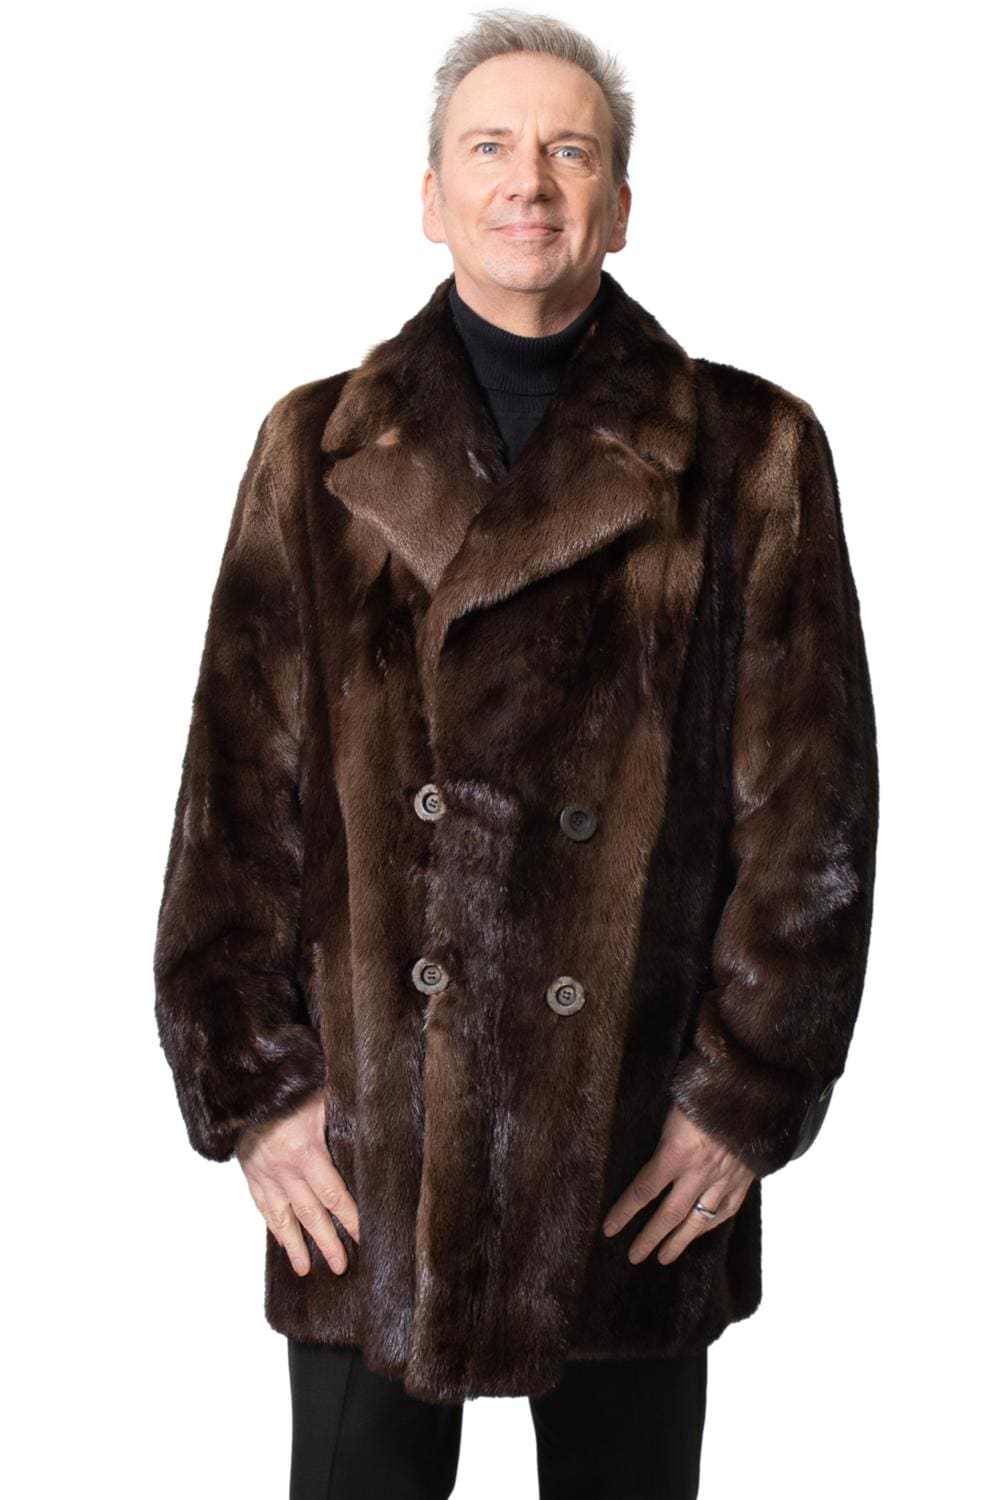 M30 2 Man's fur coat Ugent Furs